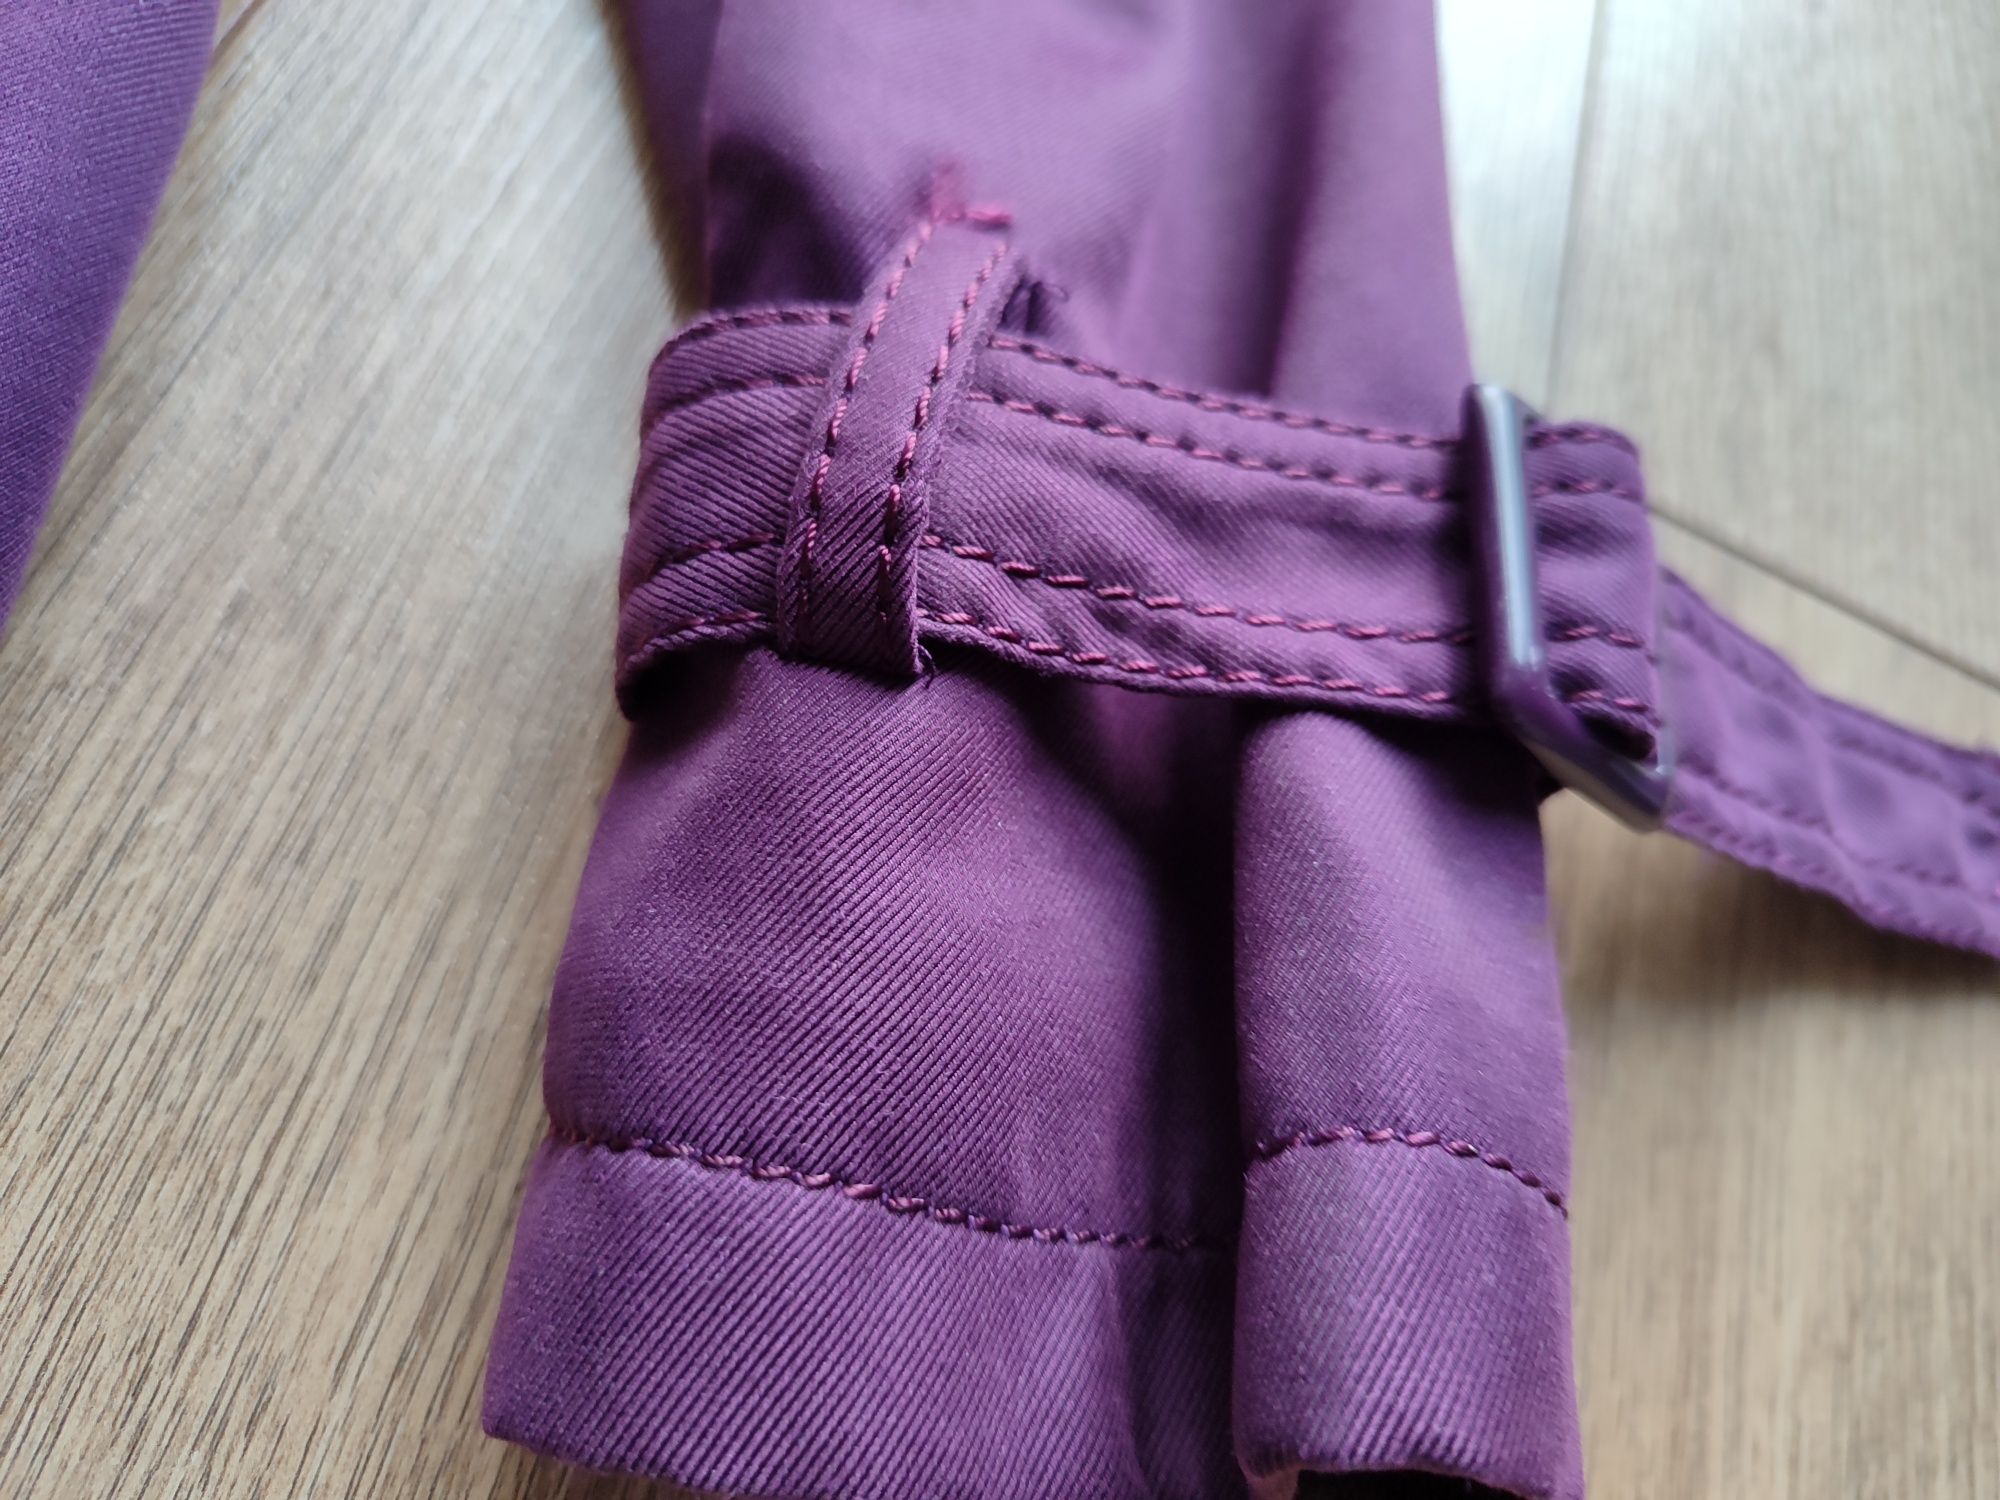 Wiosenny fioletowy płaszcz 36 S Chic & Jeune wiązany trencz